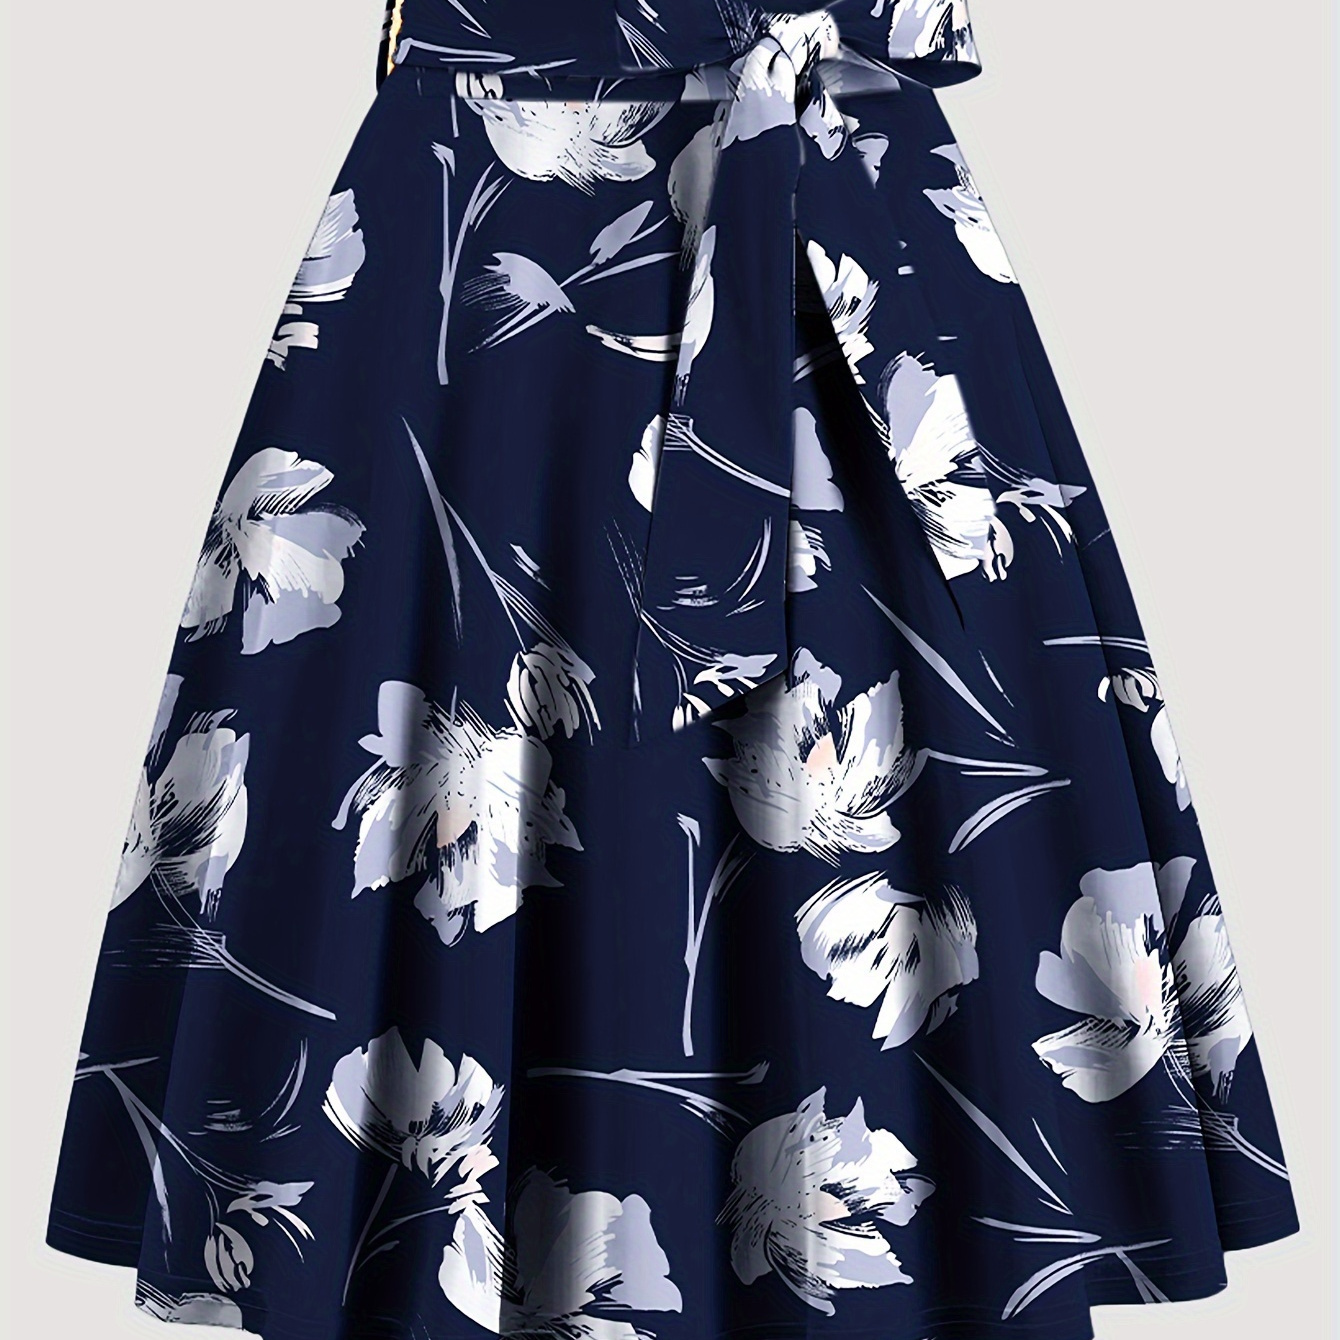 

Floral Print High Waist Skirt, Elegant Belted Flared Midi Skirt, Women's Clothing